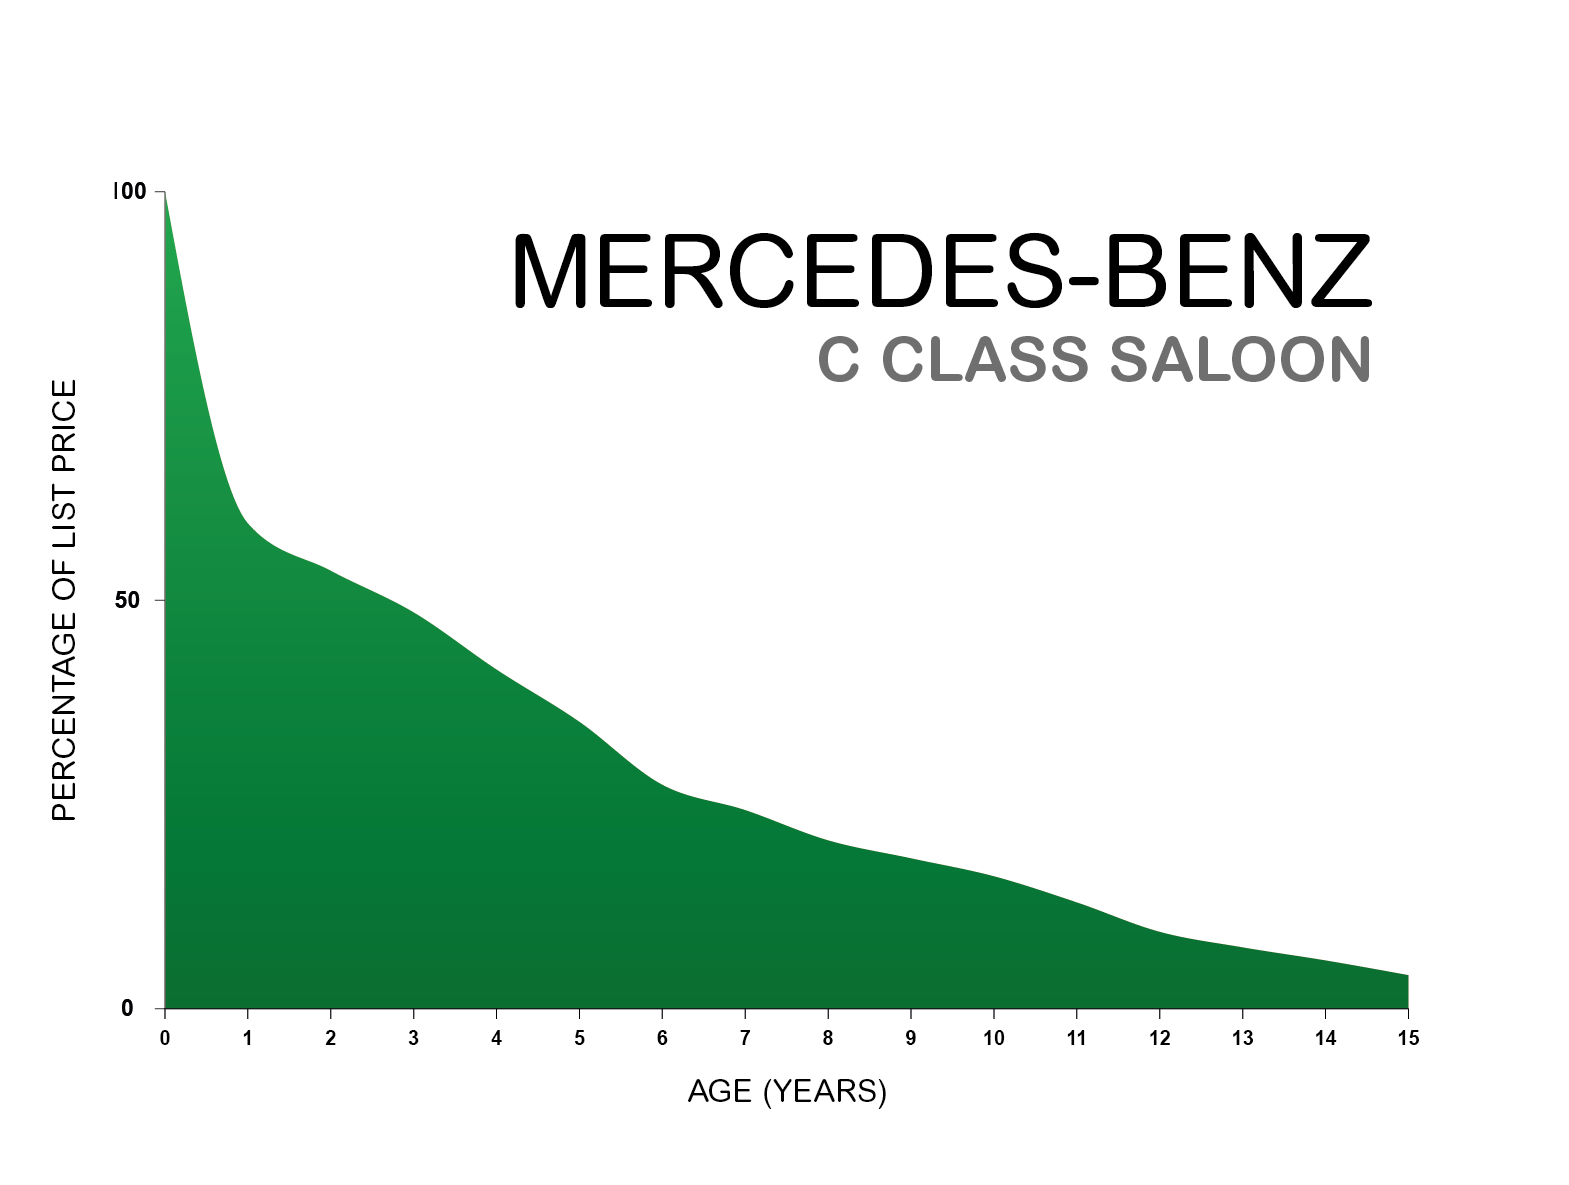 Mercedes C-Class depreciation